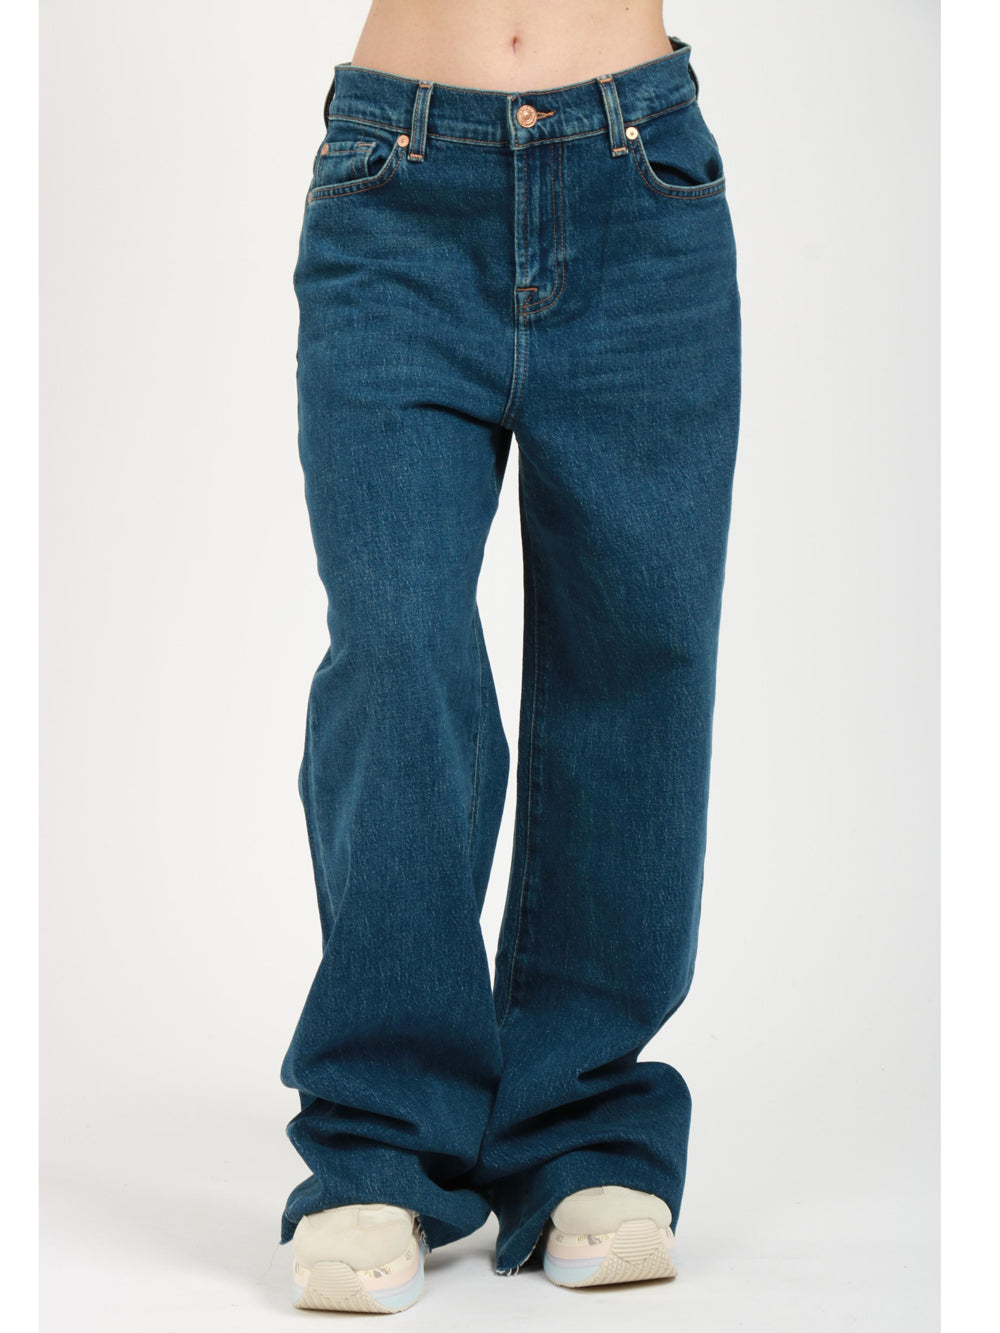 7 FOR ALL MANKIND Jeans Scout in Denim di Cotone Elasticizzato Blu Denim Blu